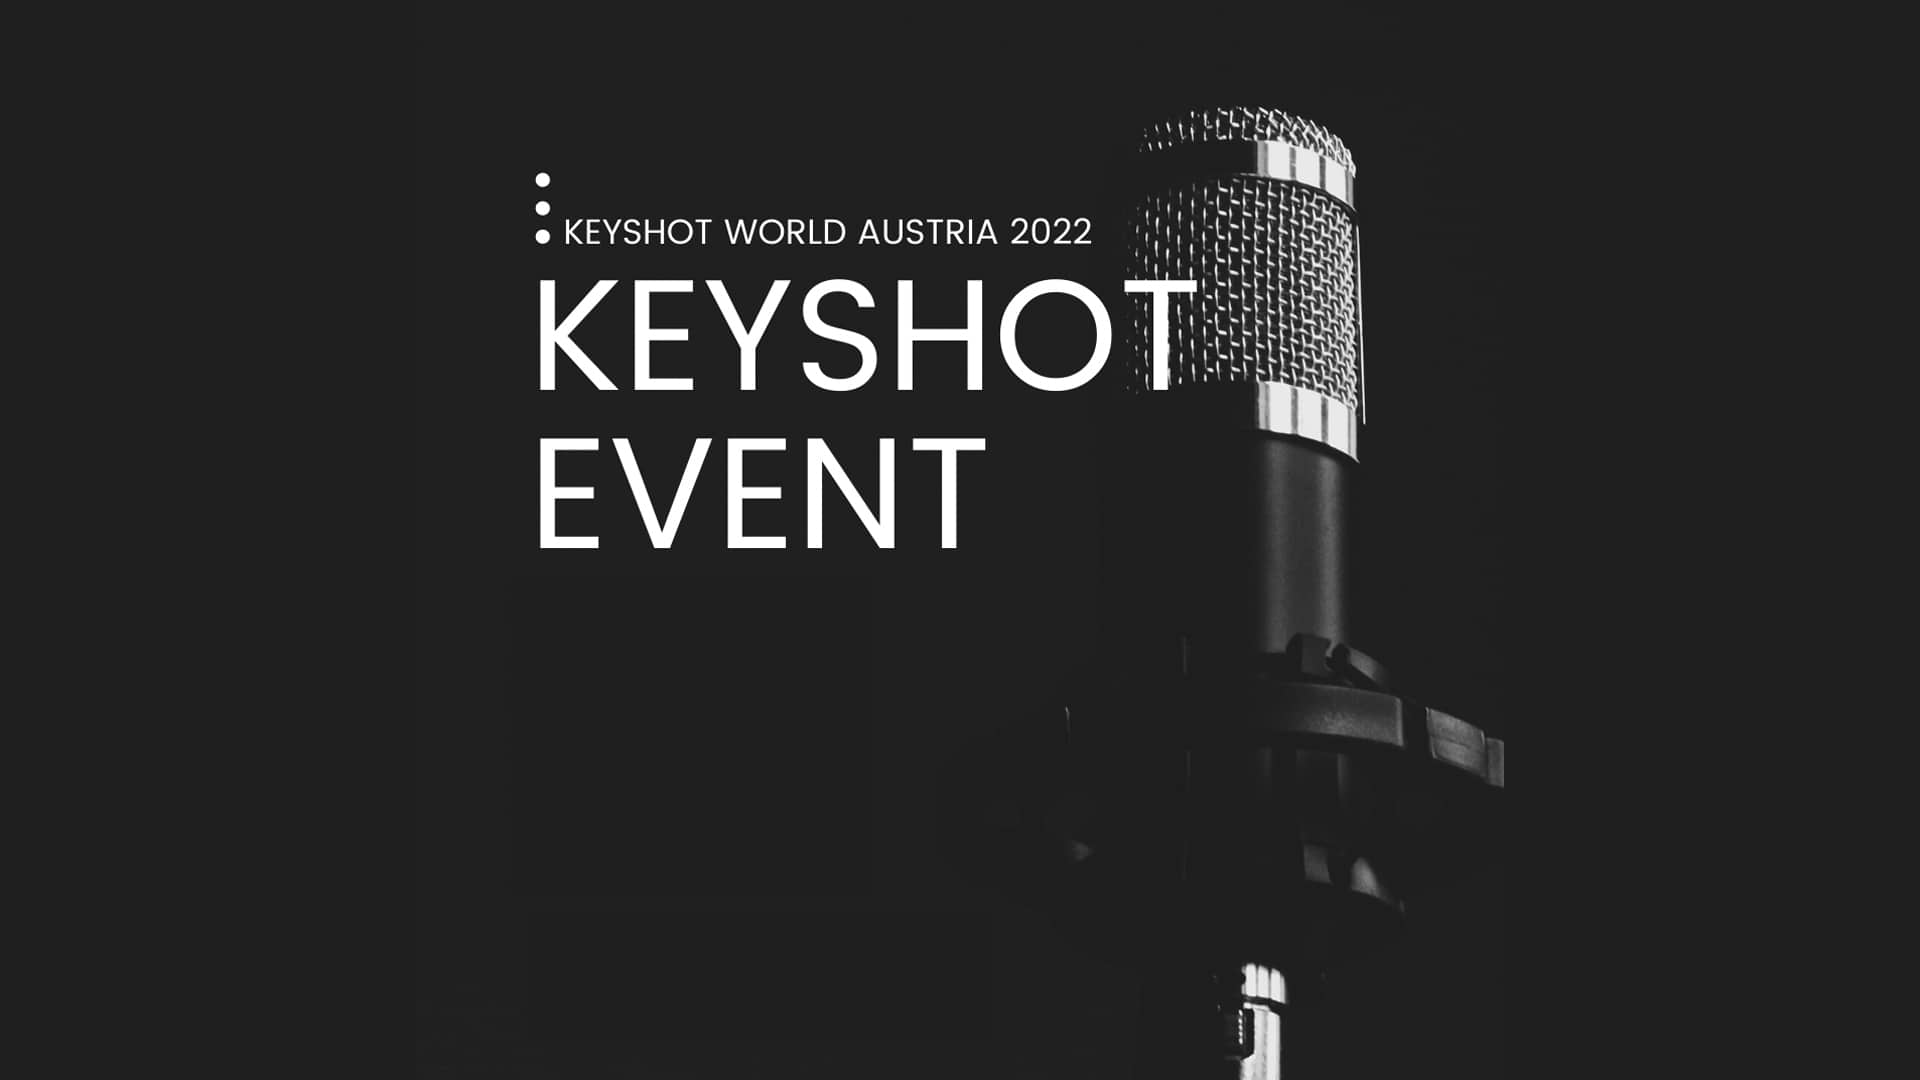 KeyShot 2022年奧地利世界錦標賽